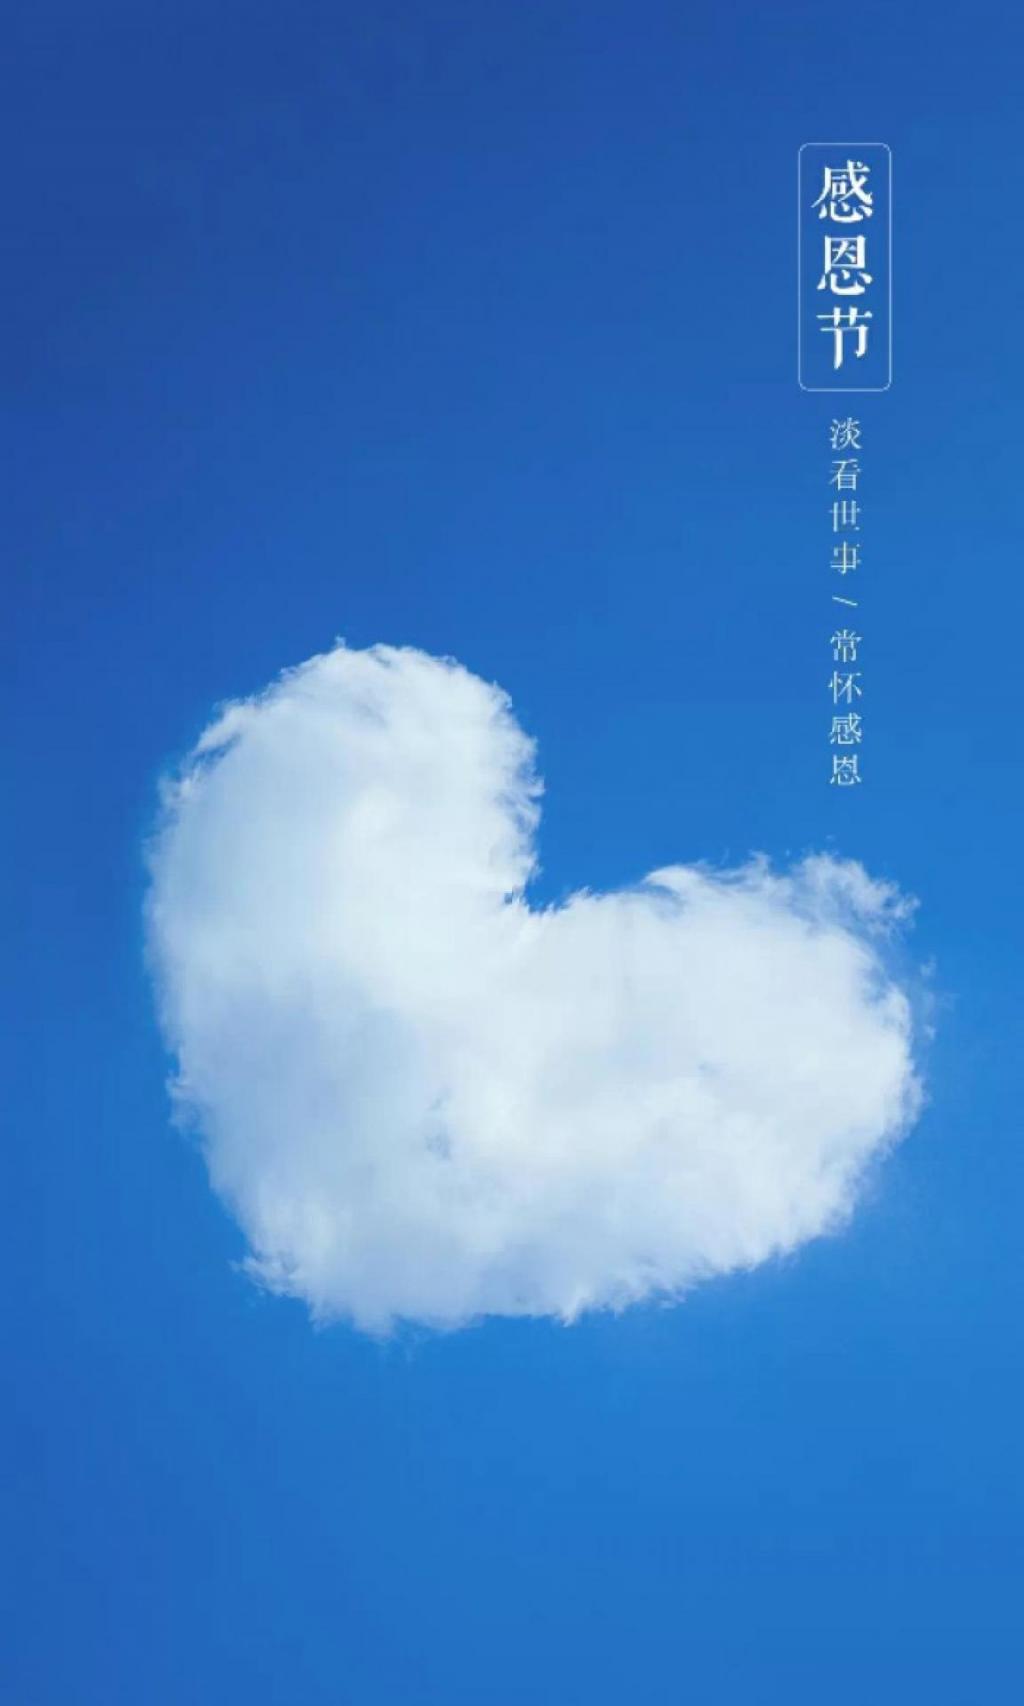 一朵爱心形状的白云漂浮着 象征着感恩的心